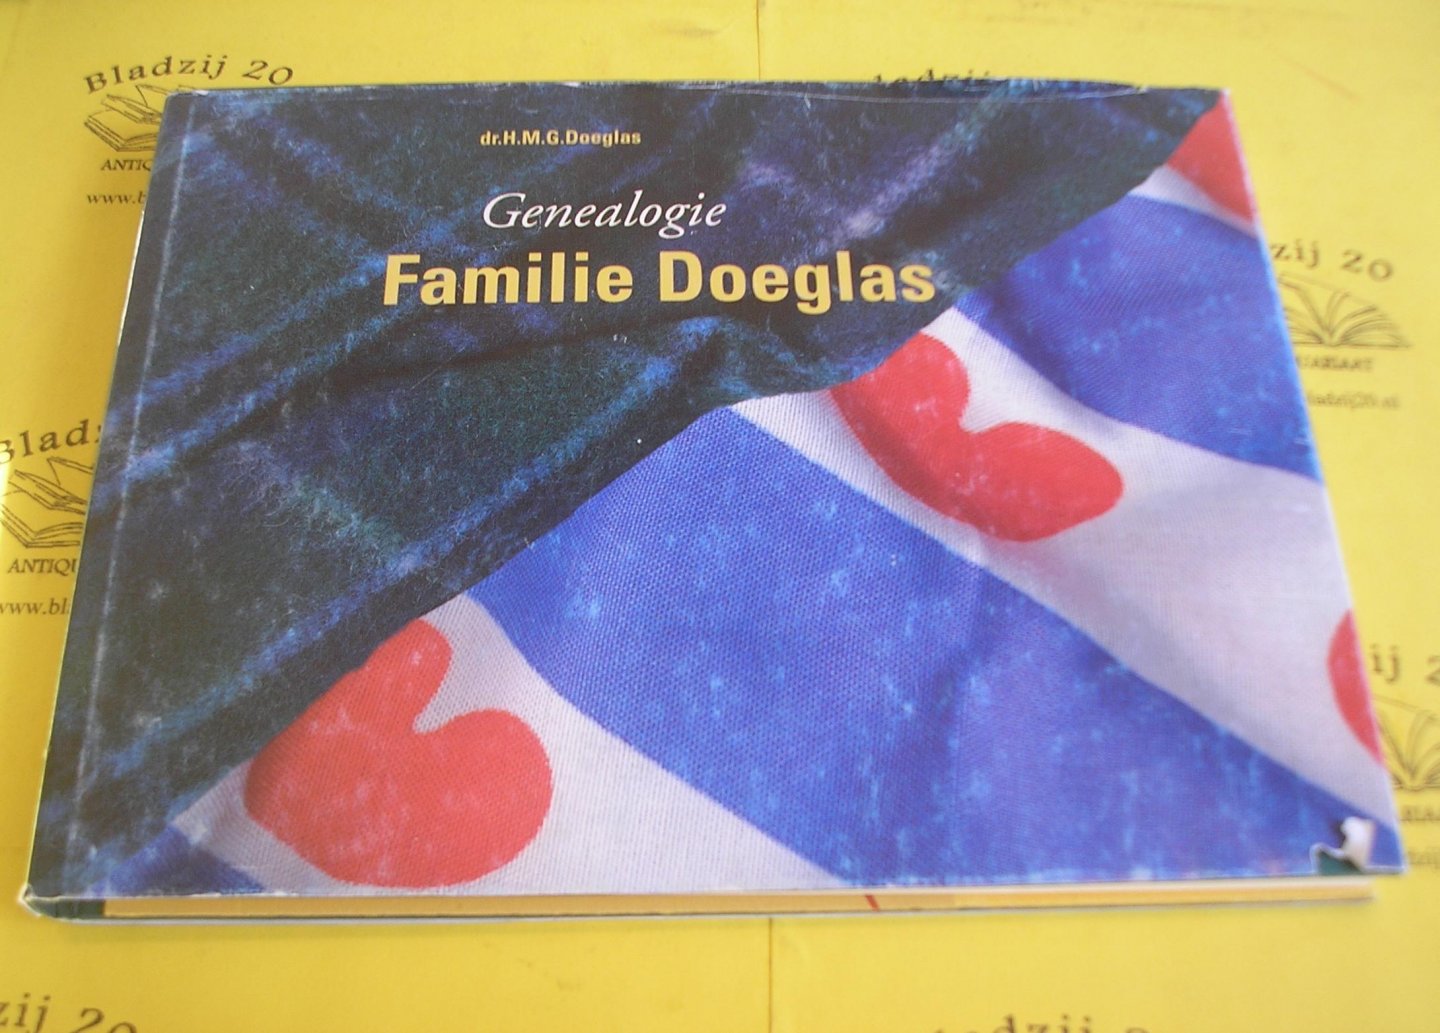 Doeglas, H.M.G. - Genealogie familie Doeglas.